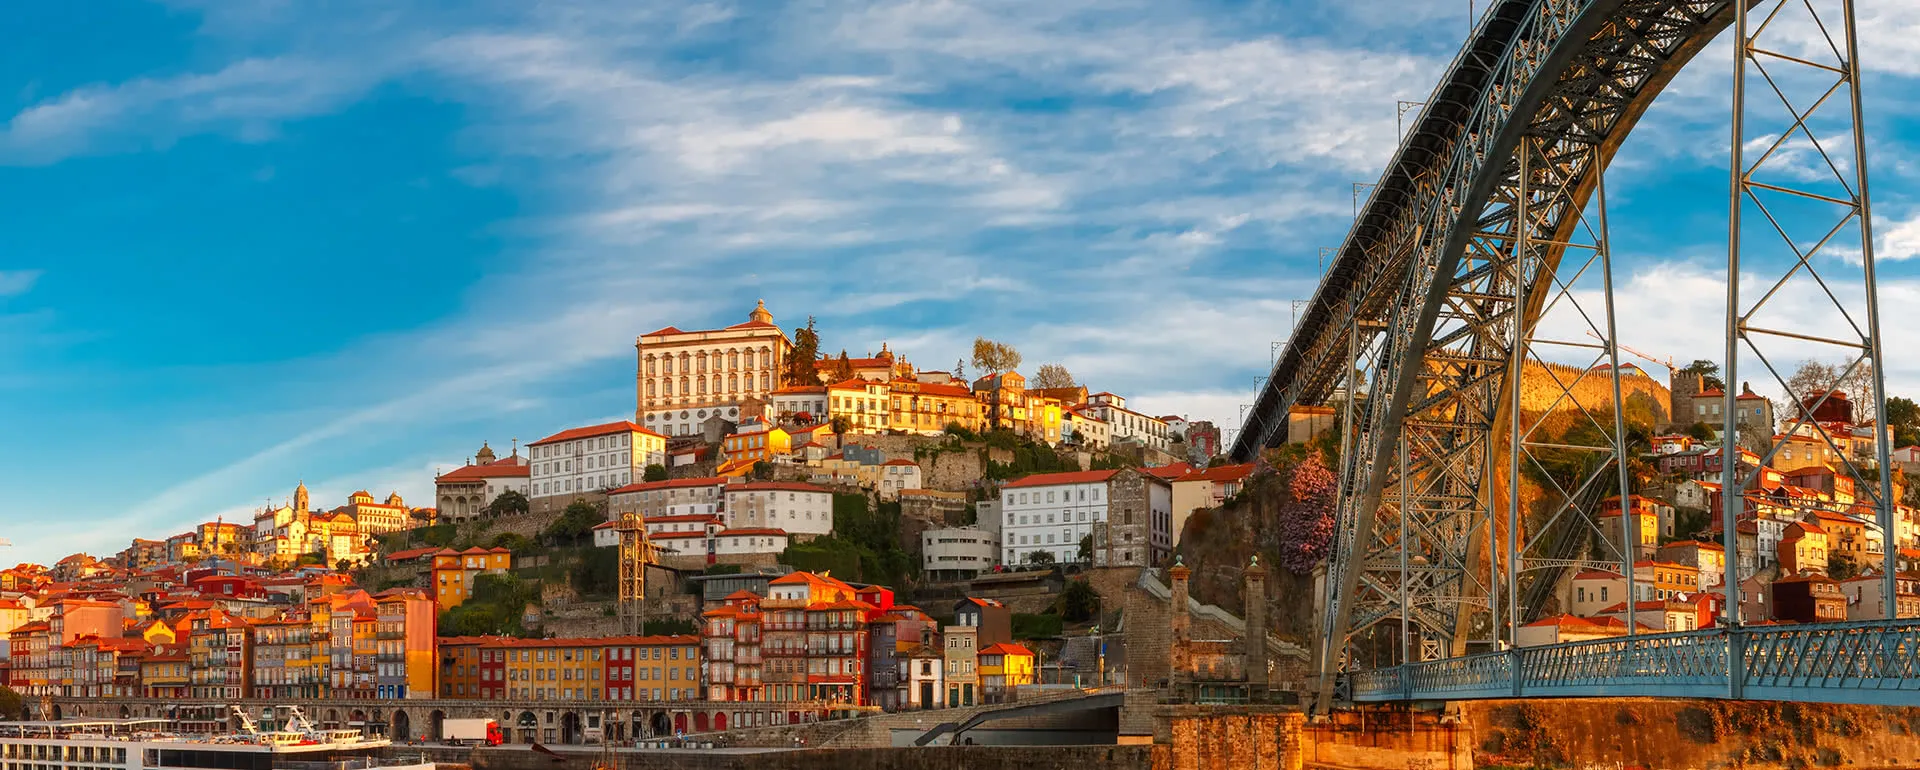 Porto - das Reiseziel mit Jugendherbergen